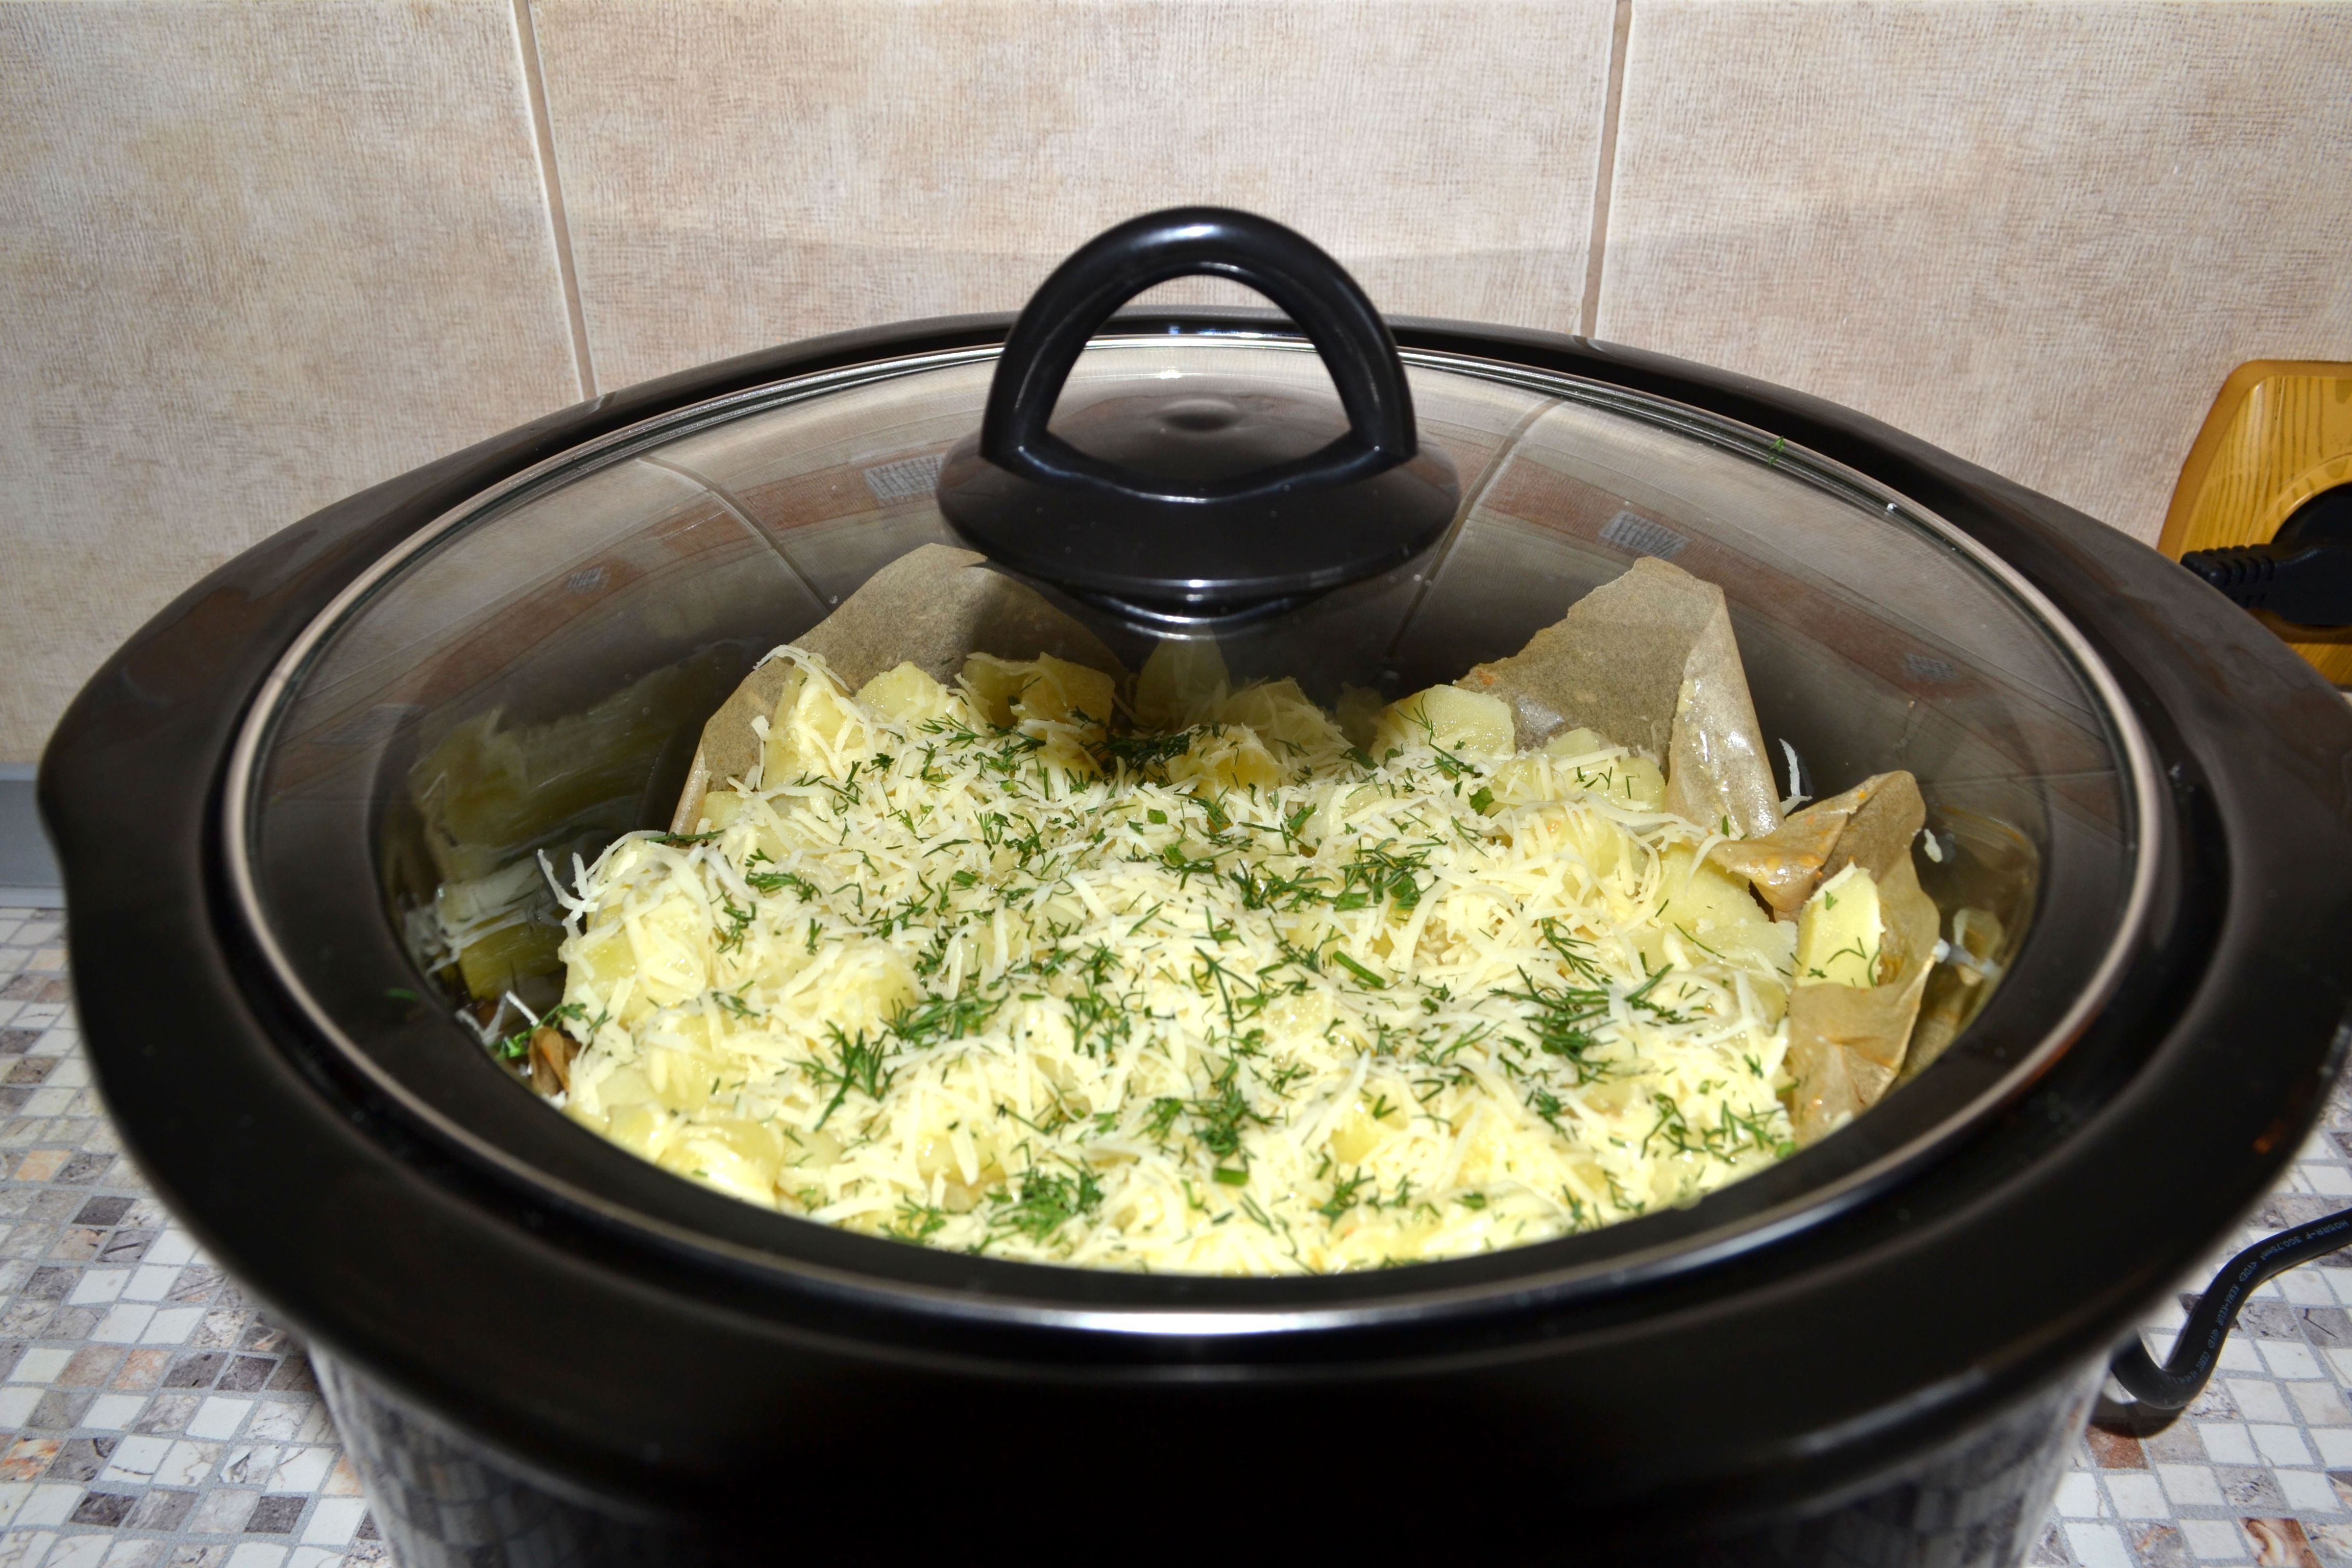 Musaca de Dorna la slow cooker Crock-Pot 4,7 L